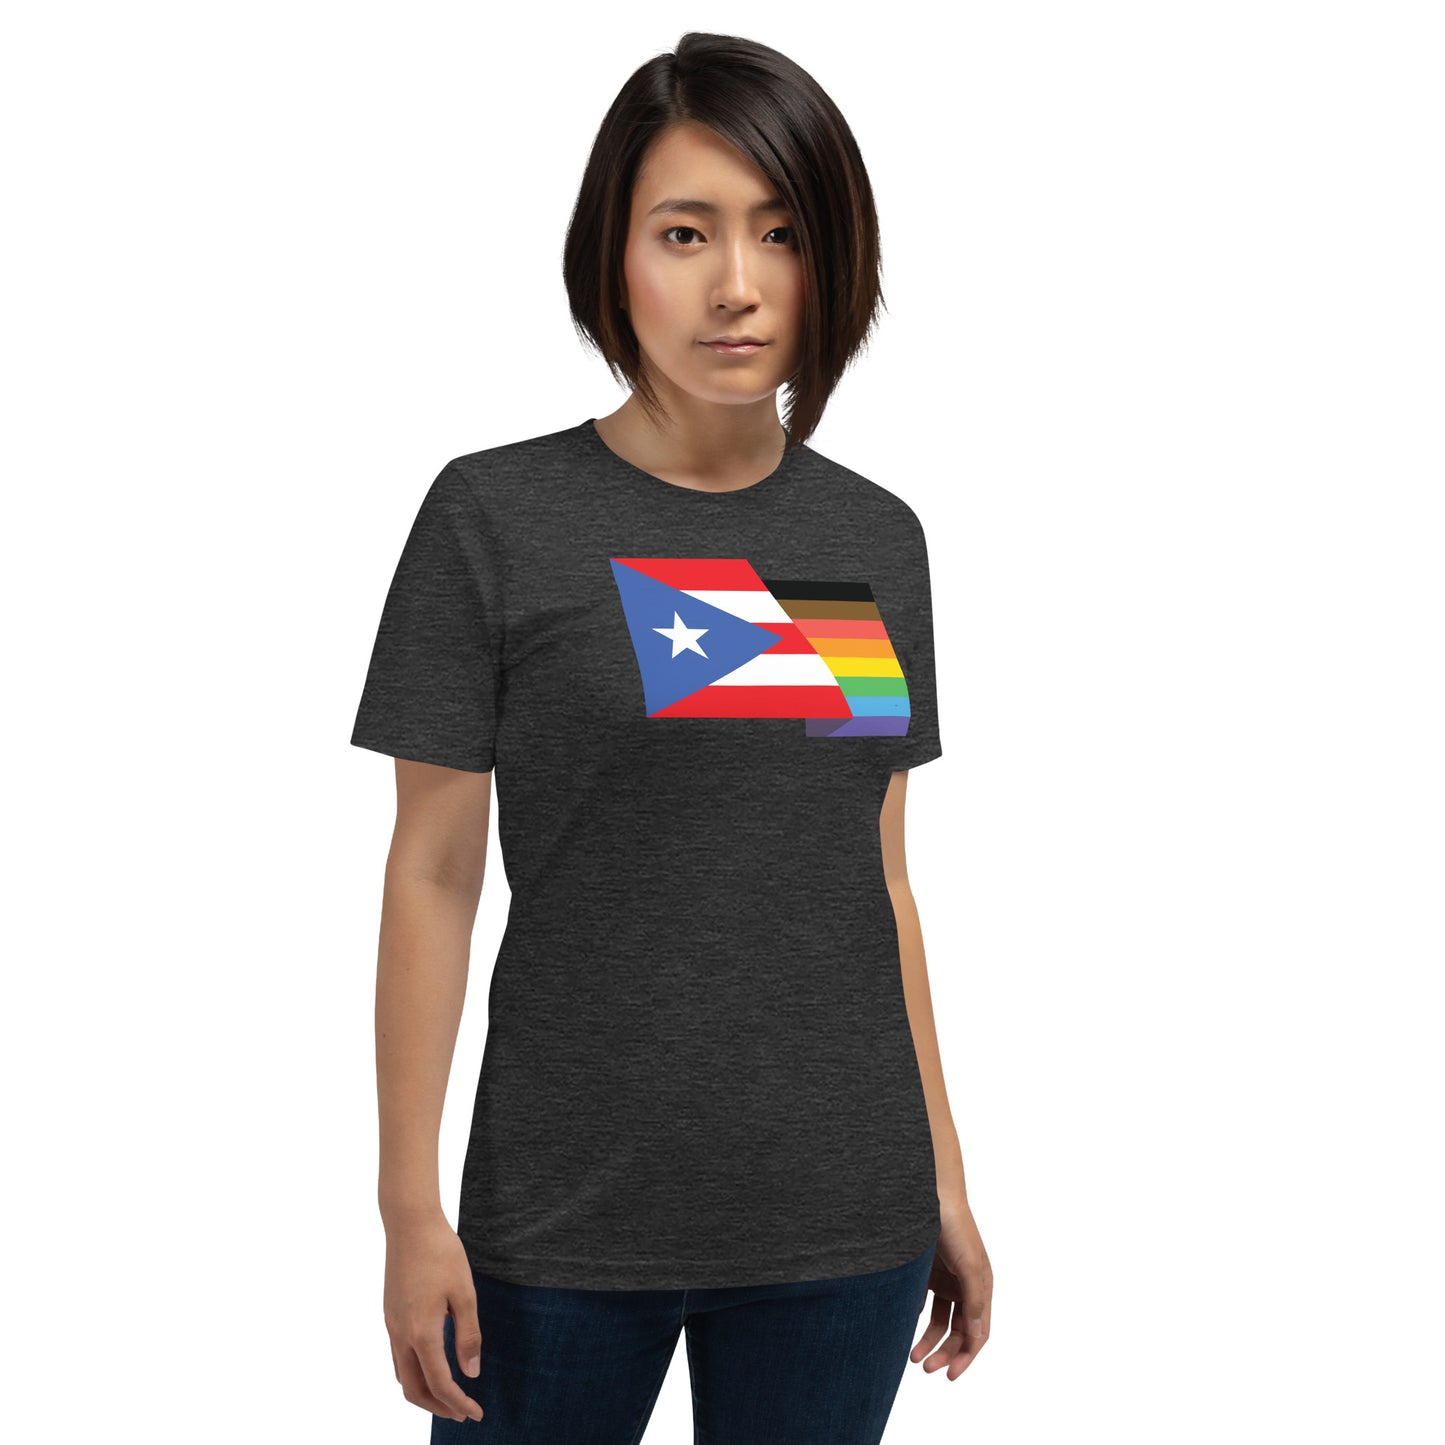 Puerto Rico Pride - Unisex Shirt